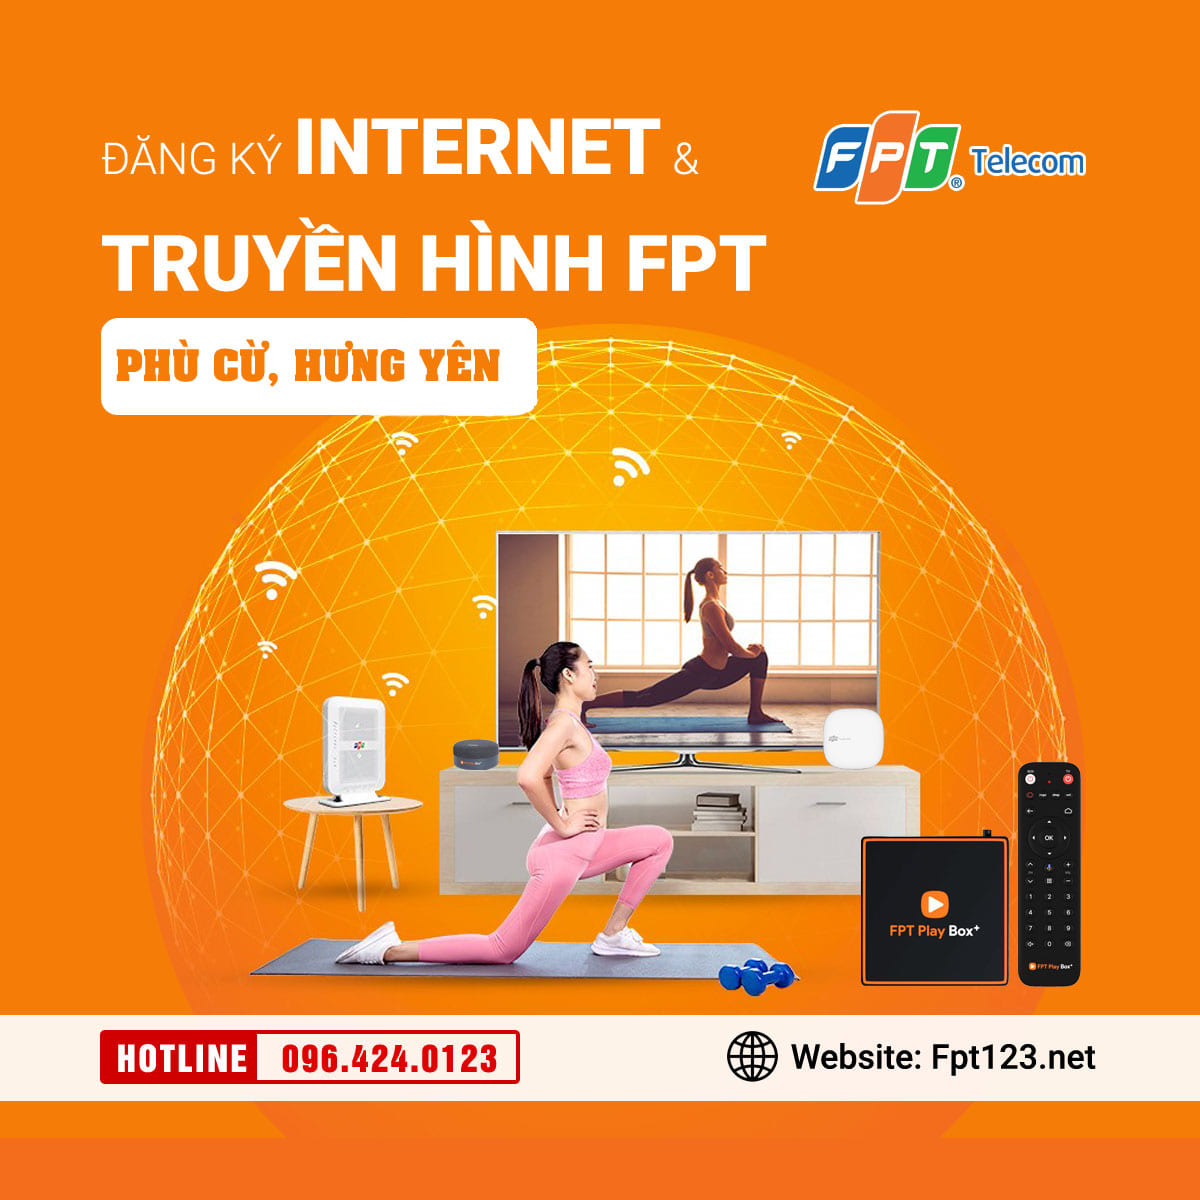 Đăng ký internet và truyền hình FPT Phù Cừ, Hưng Yên